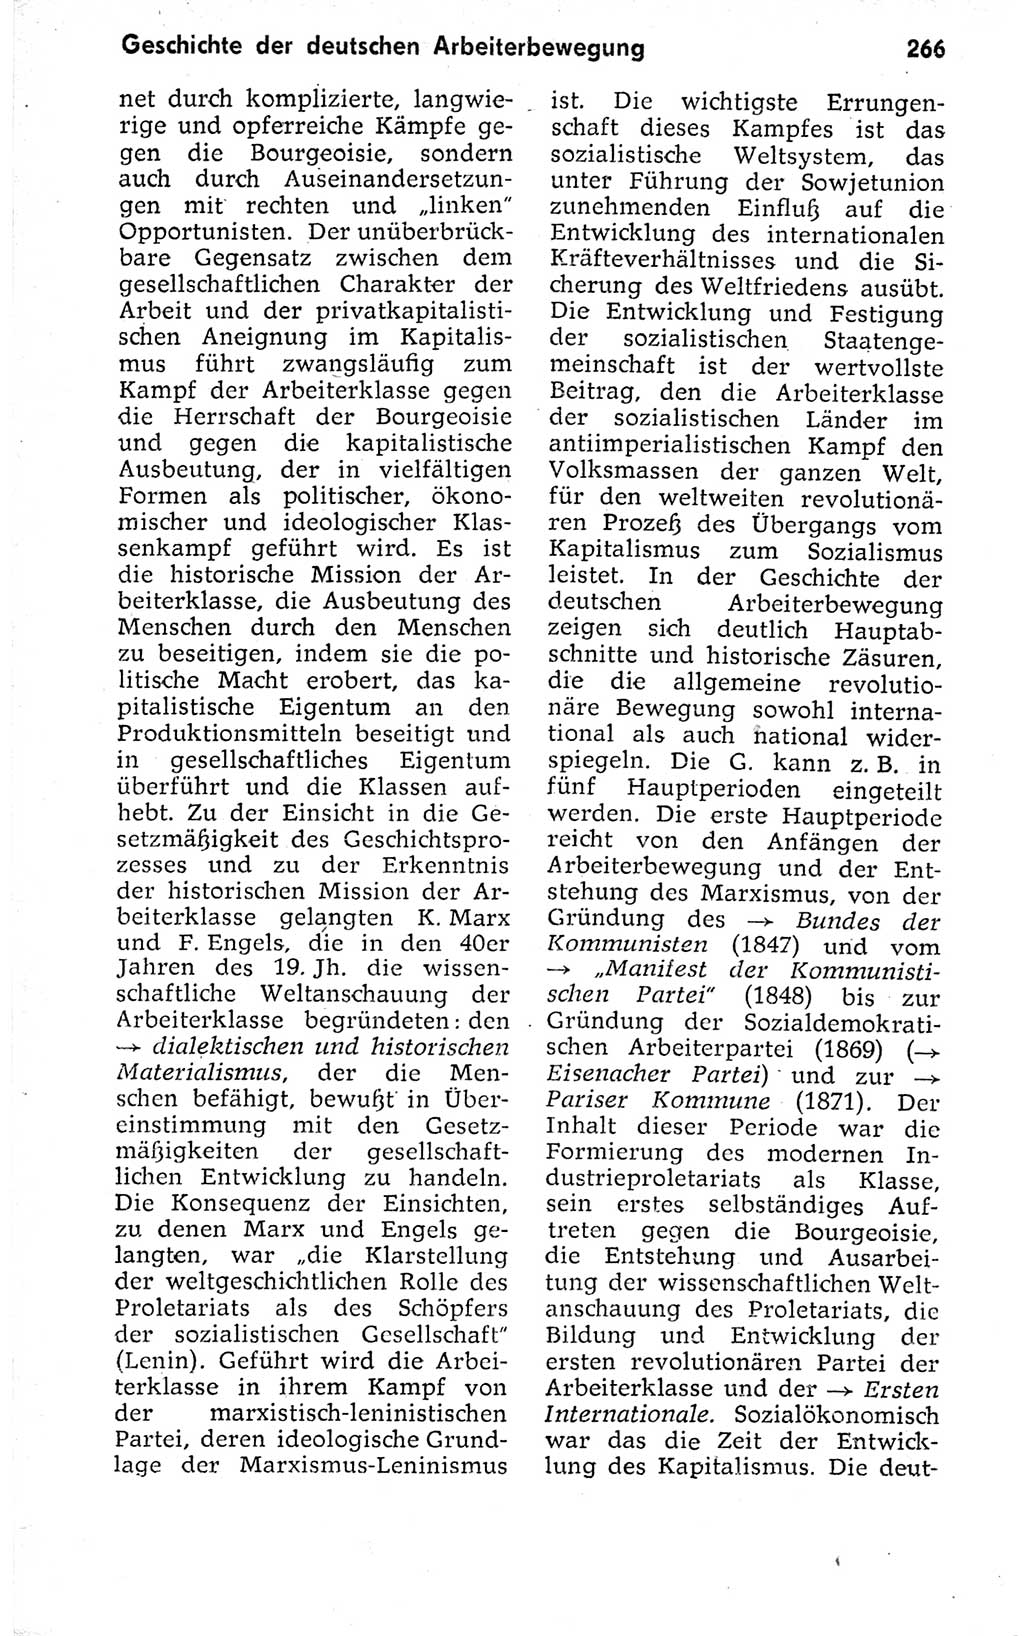 Kleines politisches Wörterbuch [Deutsche Demokratische Republik (DDR)] 1973, Seite 266 (Kl. pol. Wb. DDR 1973, S. 266)